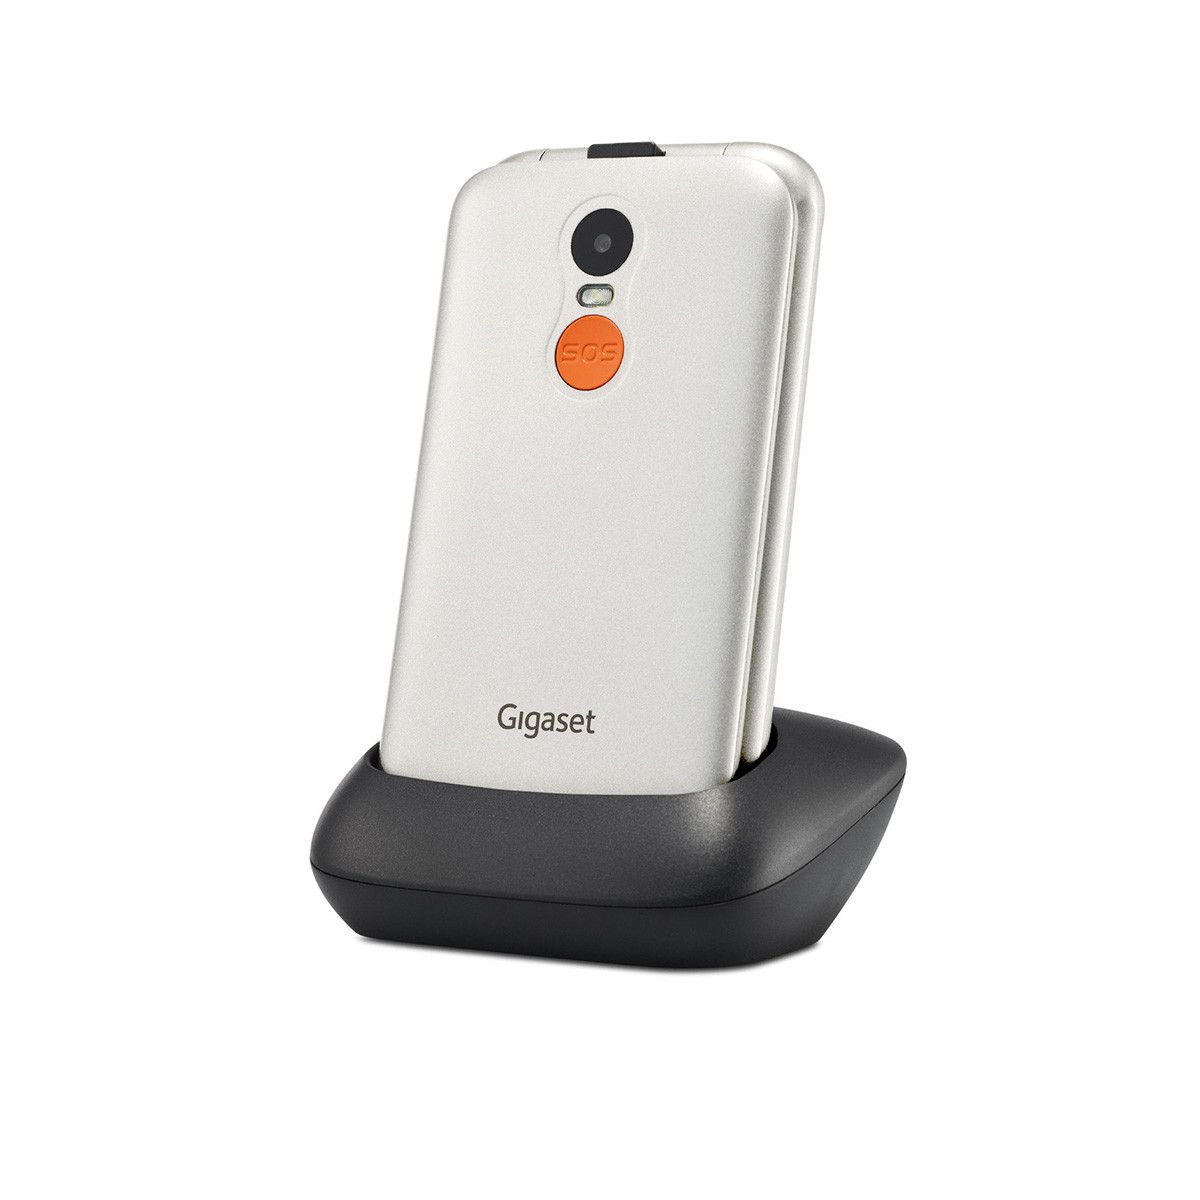 0,3 MP expert Dual Technomarkt Smartphone GL590 (Weiß) cm Zoll) 7,11 Sim Gigaset (2.8 von 2G